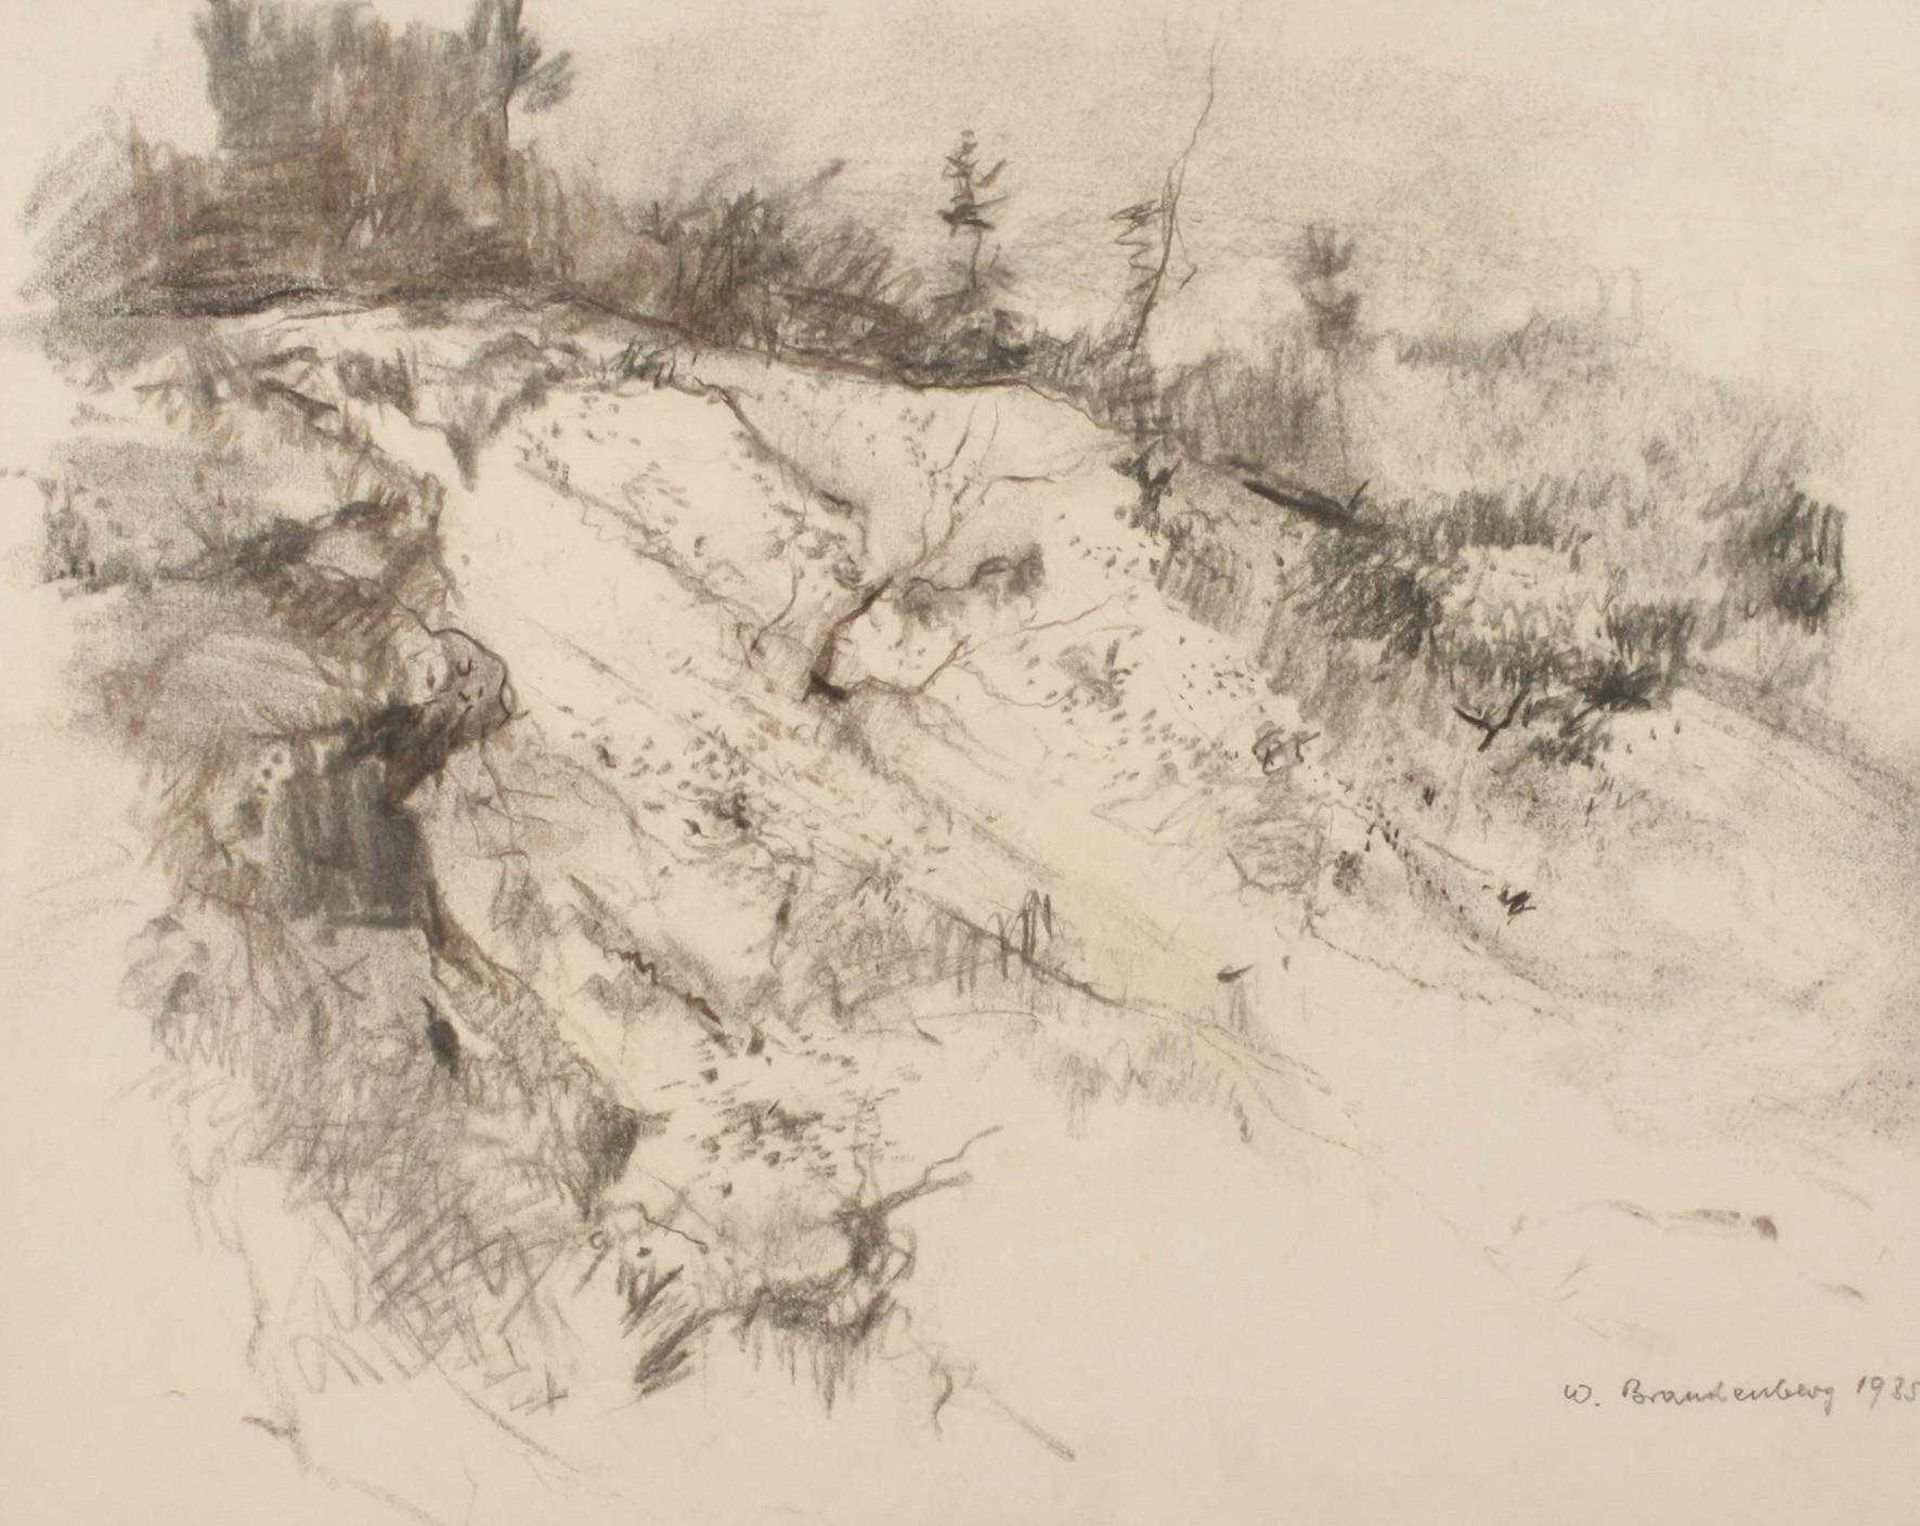 Wilhelm Brandenberg, "Sandgrube"Landschaft mit Tagebau am steilen Hang, der in seiner Malerei Caspar